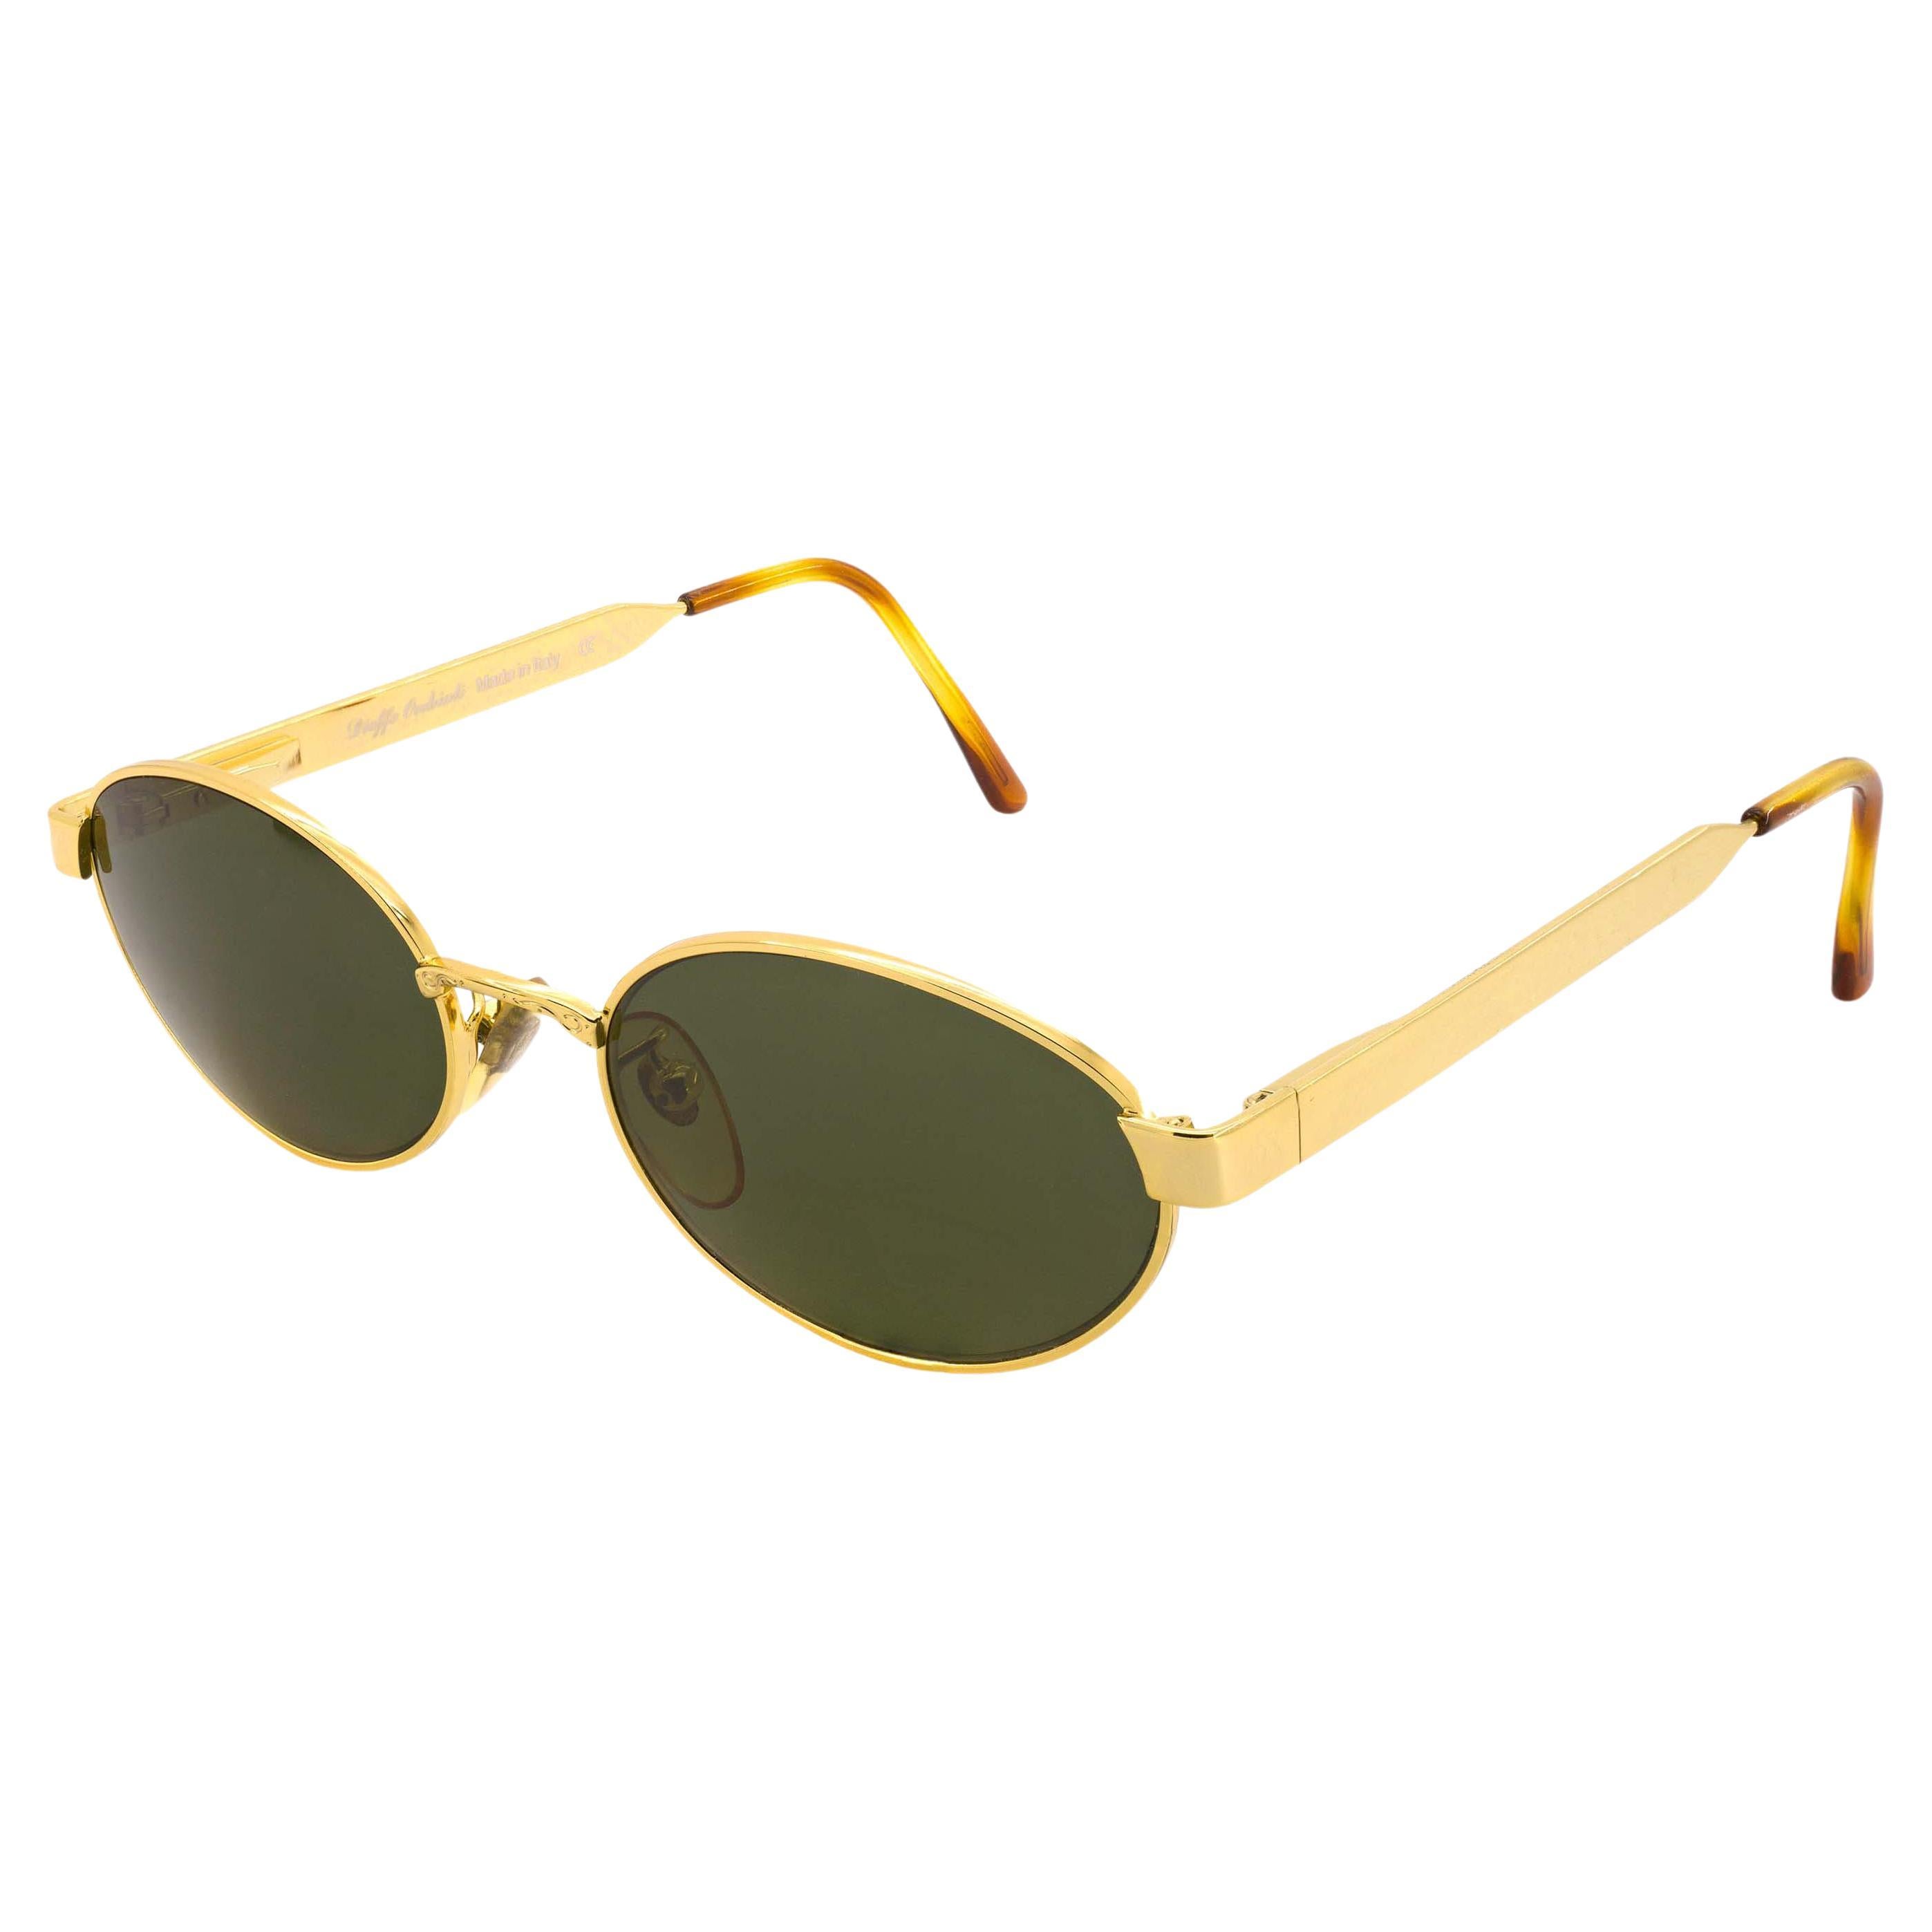 Top Gun vintage sunglasses For Sale